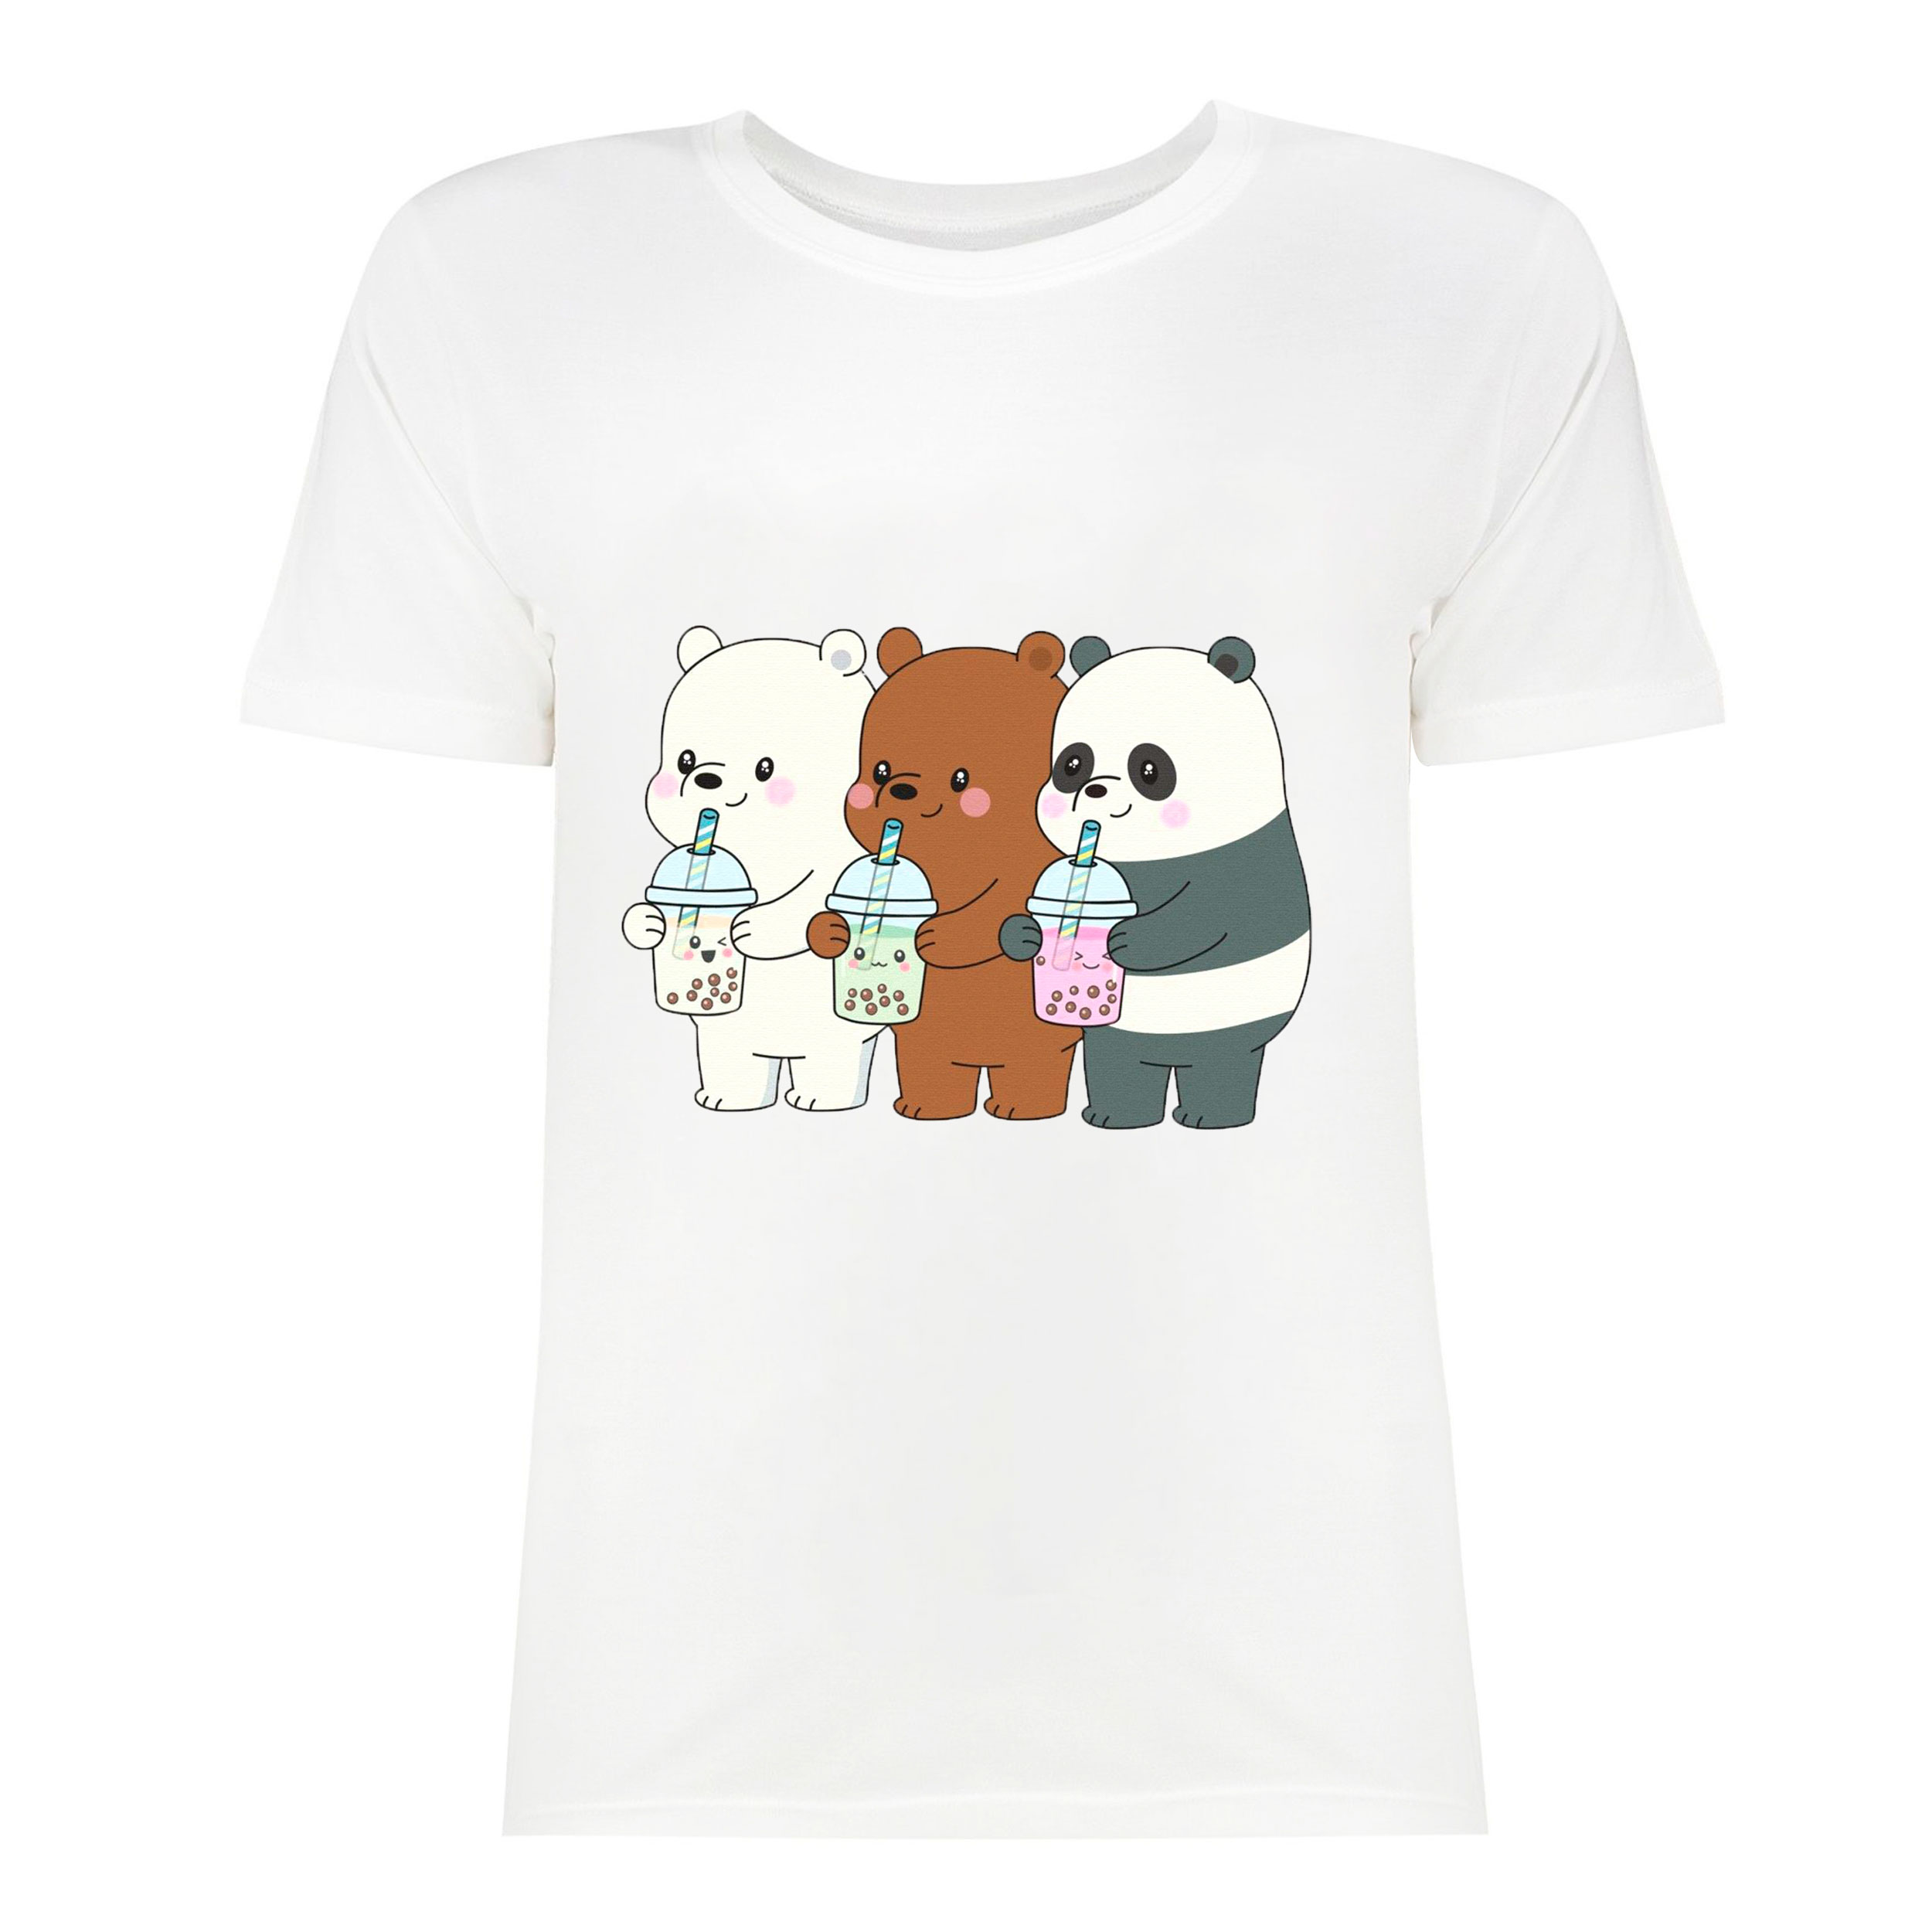 نقد و بررسی تی شرت آستین کوتاه بچگانه مدل سه خرس و نوشیدنی توسط خریداران